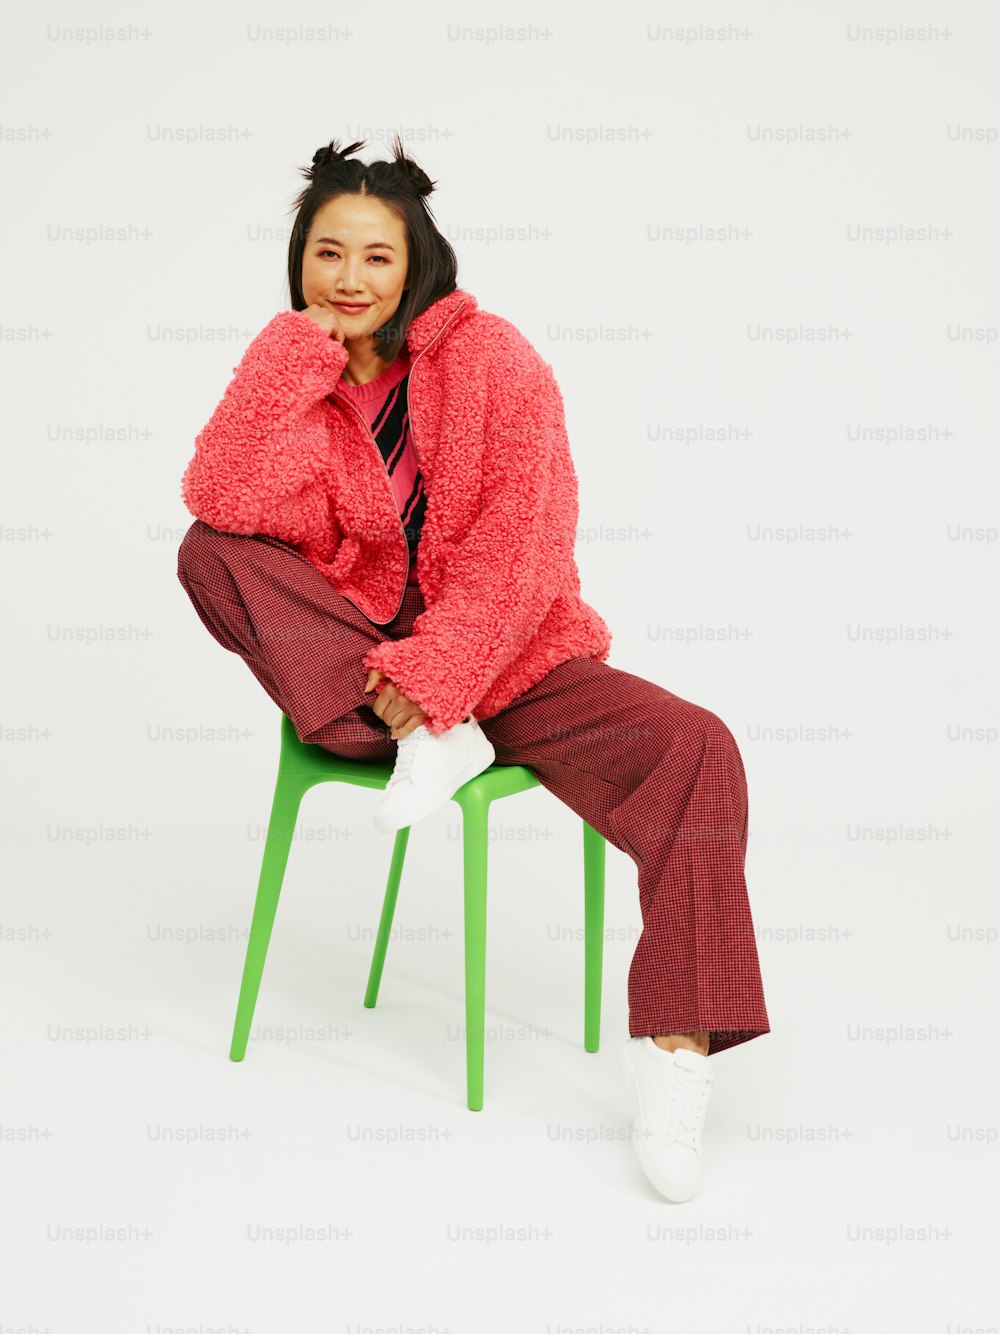 Une femme est assise sur une chaise verte